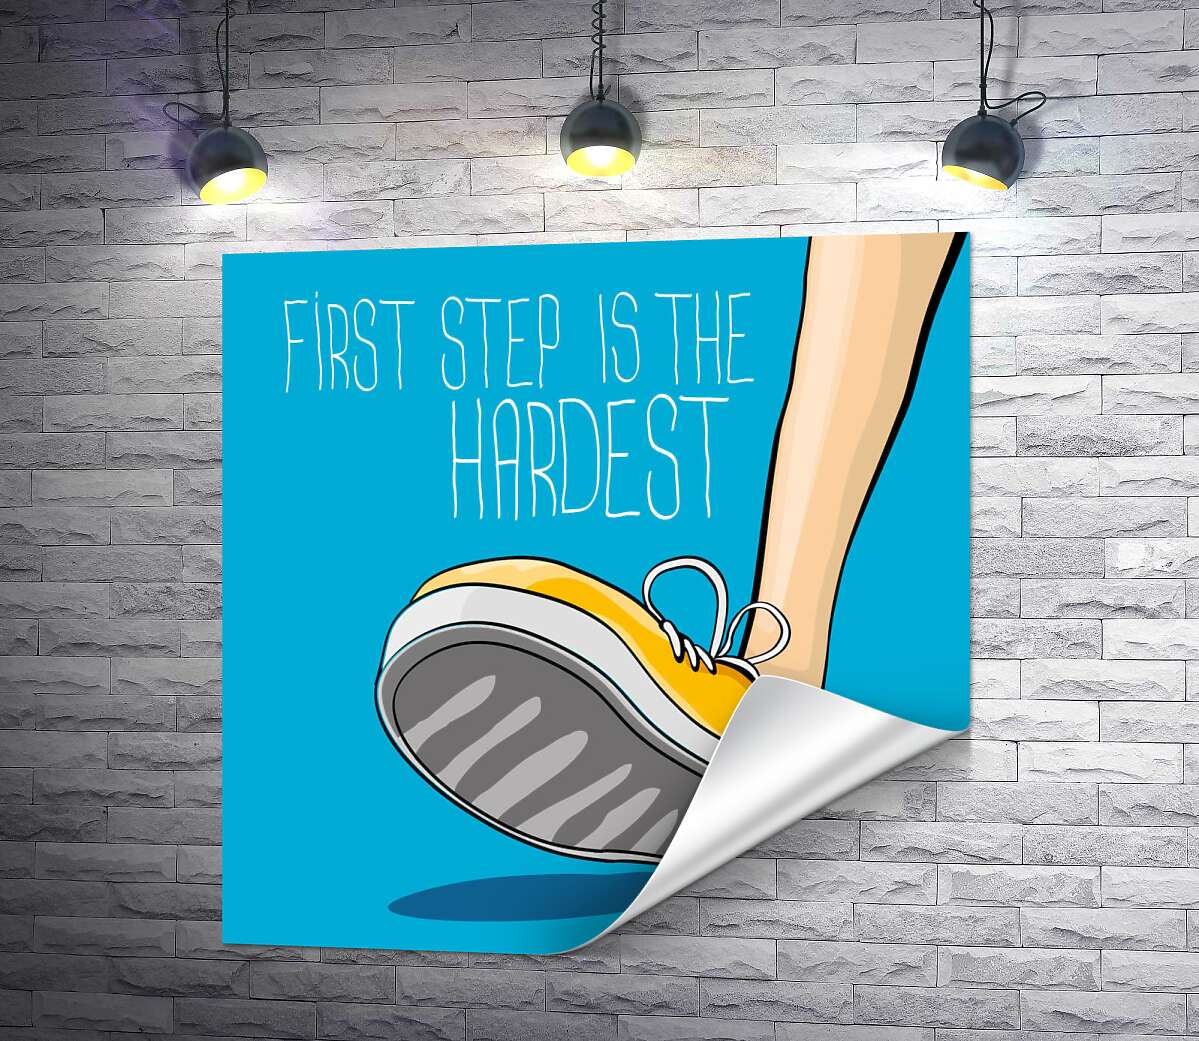 печать Желтый кроссовок ступает на землю рядом с фразой "first step is the hardest"